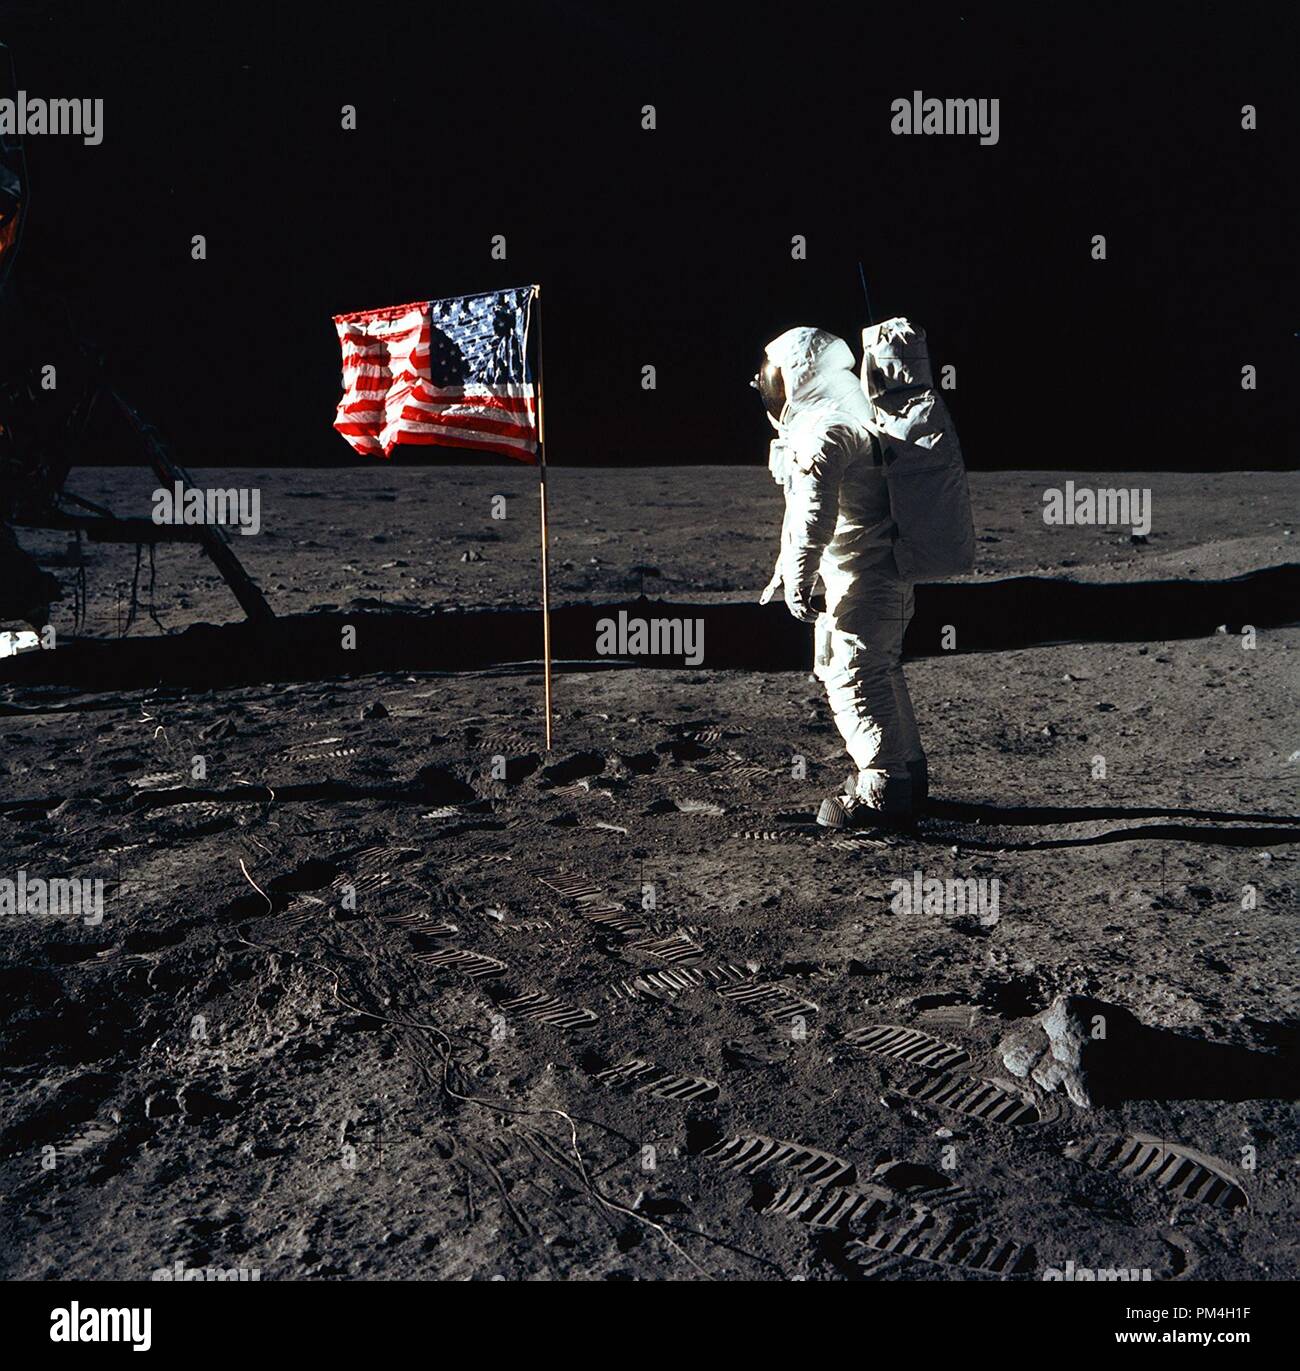 (20. Juli 1969) - - - Astronaut Edwin E. Aldrin Jr., Lunar Module pilot Der erste Mondlandung Mission, posiert für ein Foto neben dem Einsatz United Flaggenstaaten während einer Apollo 11 Extra Vehicular Activity (EVA) auf der Mondoberfläche. Die Landefähre (LM) ist auf der linken Seite und die fußspuren der Astronauten sind deutlich im Boden des Mondes sichtbar. A. in der Astronaut Neil Armstrong, Kommandant, nahm dieses Bild mit einem 70 mm Hasselblad Mondoberfläche Kamera. Während die Astronauten Armstrong und Aldrin in der LM, die 'Adler', stieg das Meer der Ruhe Region des Mondes zu erkunden, Astronaut Mi Stockfoto